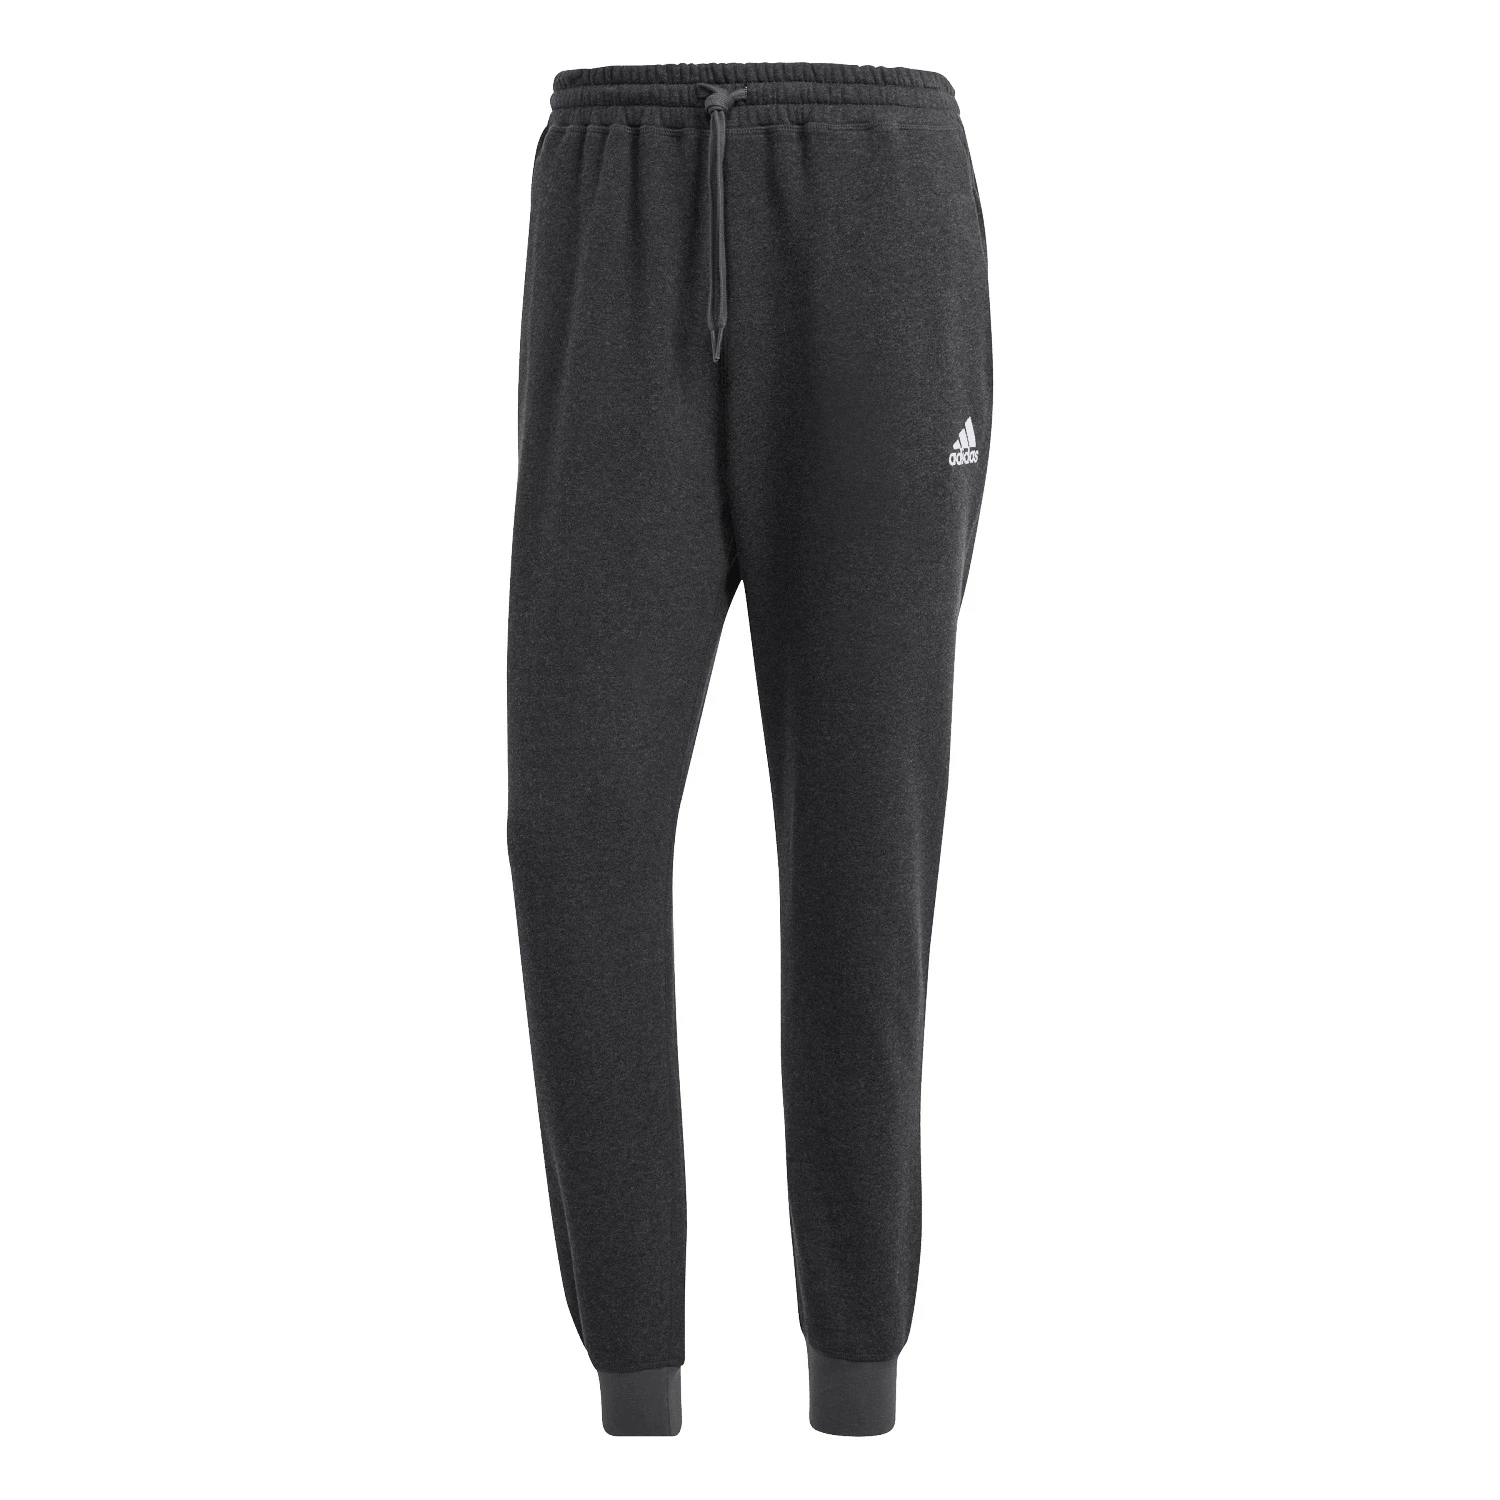 Adidas Seasonal Essential Melange joggingbroek heren